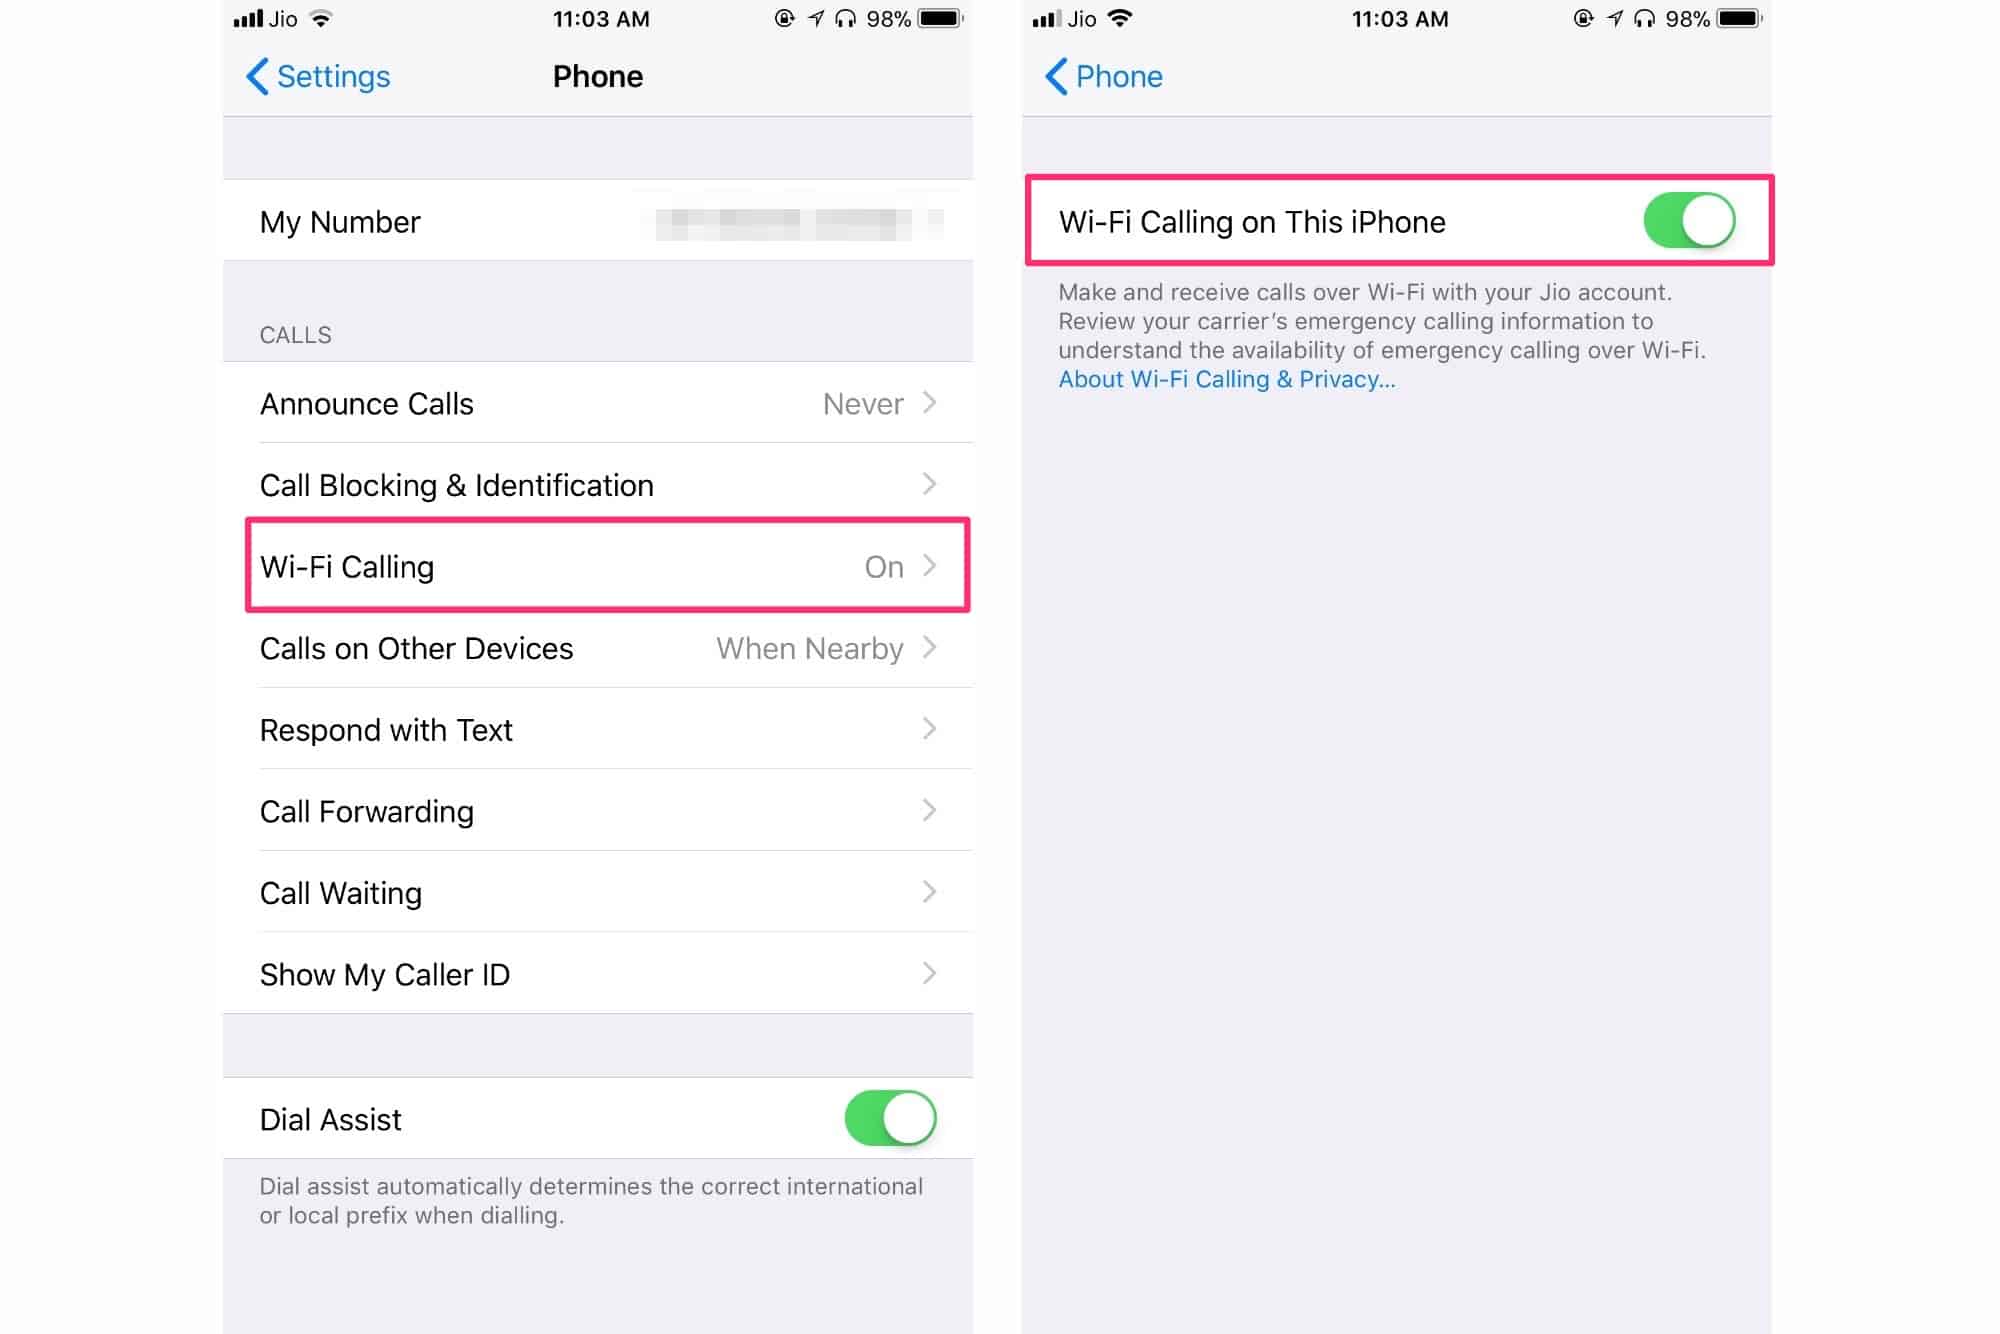 Wi-Fi Calling: Initiating Wi-Fi Calls On IPhone 10